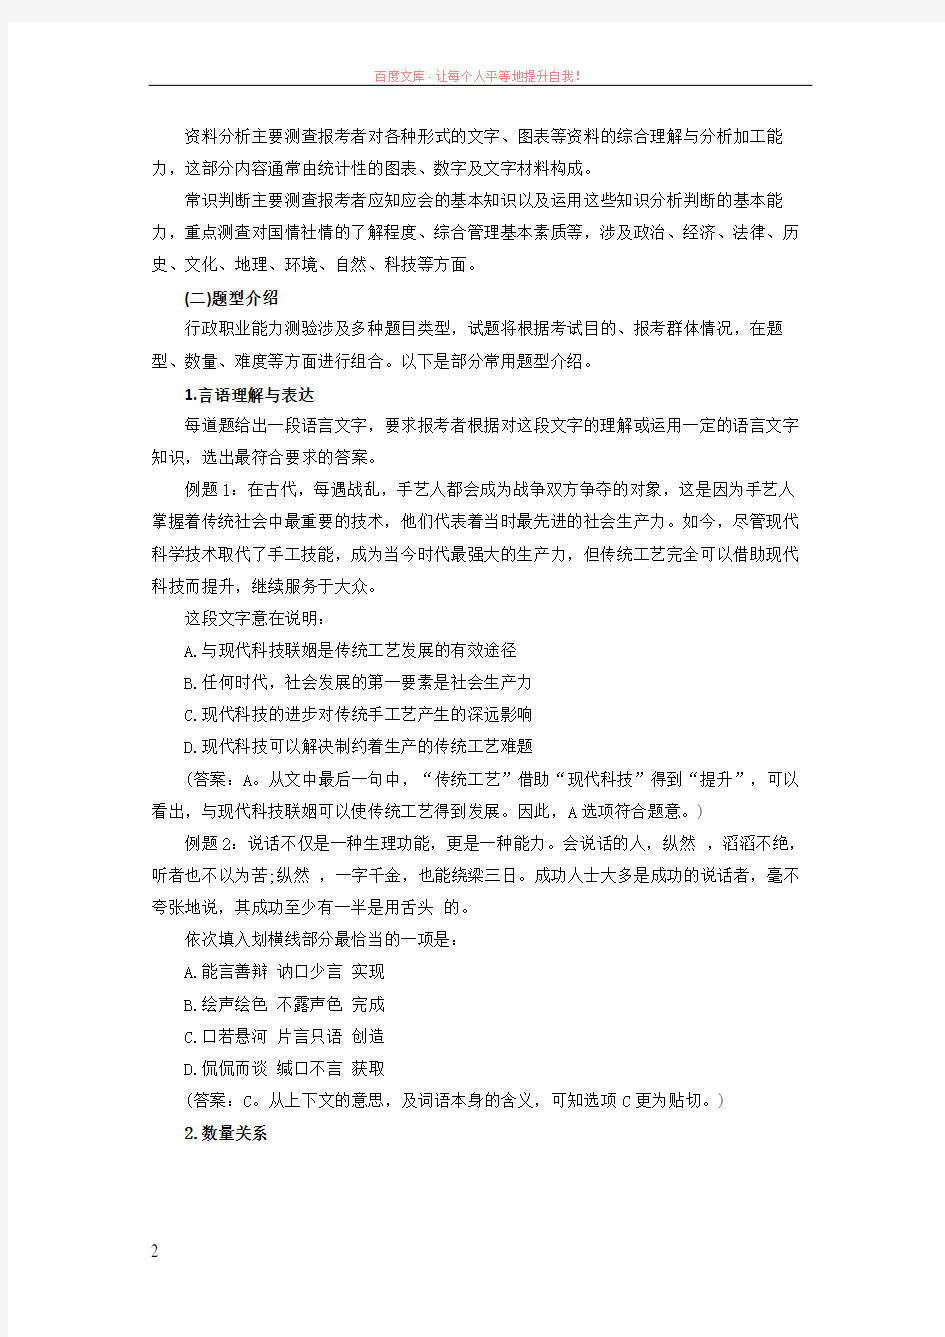 2019年黑龙江省公务员考试公共科目考试大纲